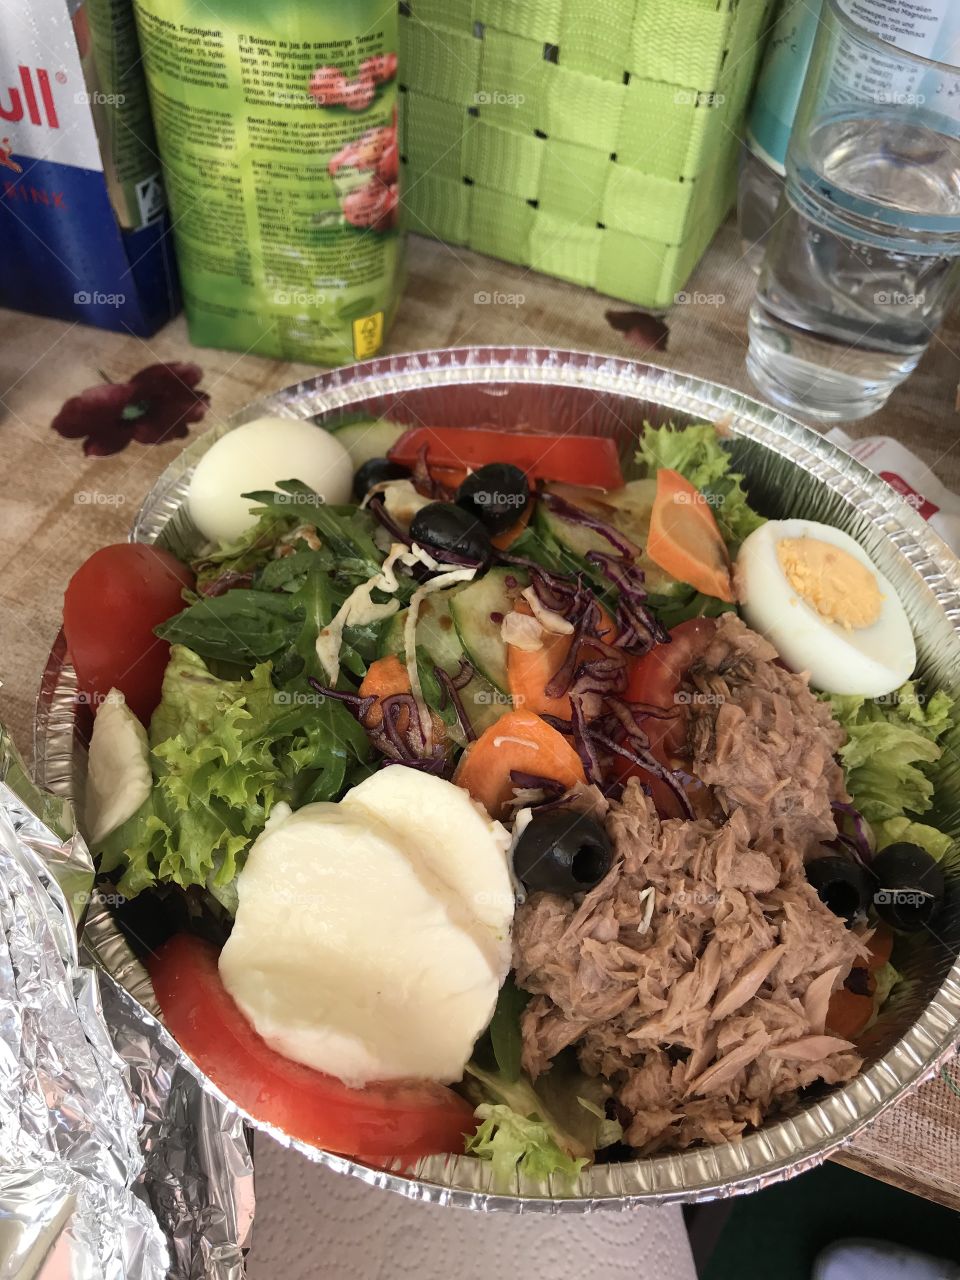 A good salad 